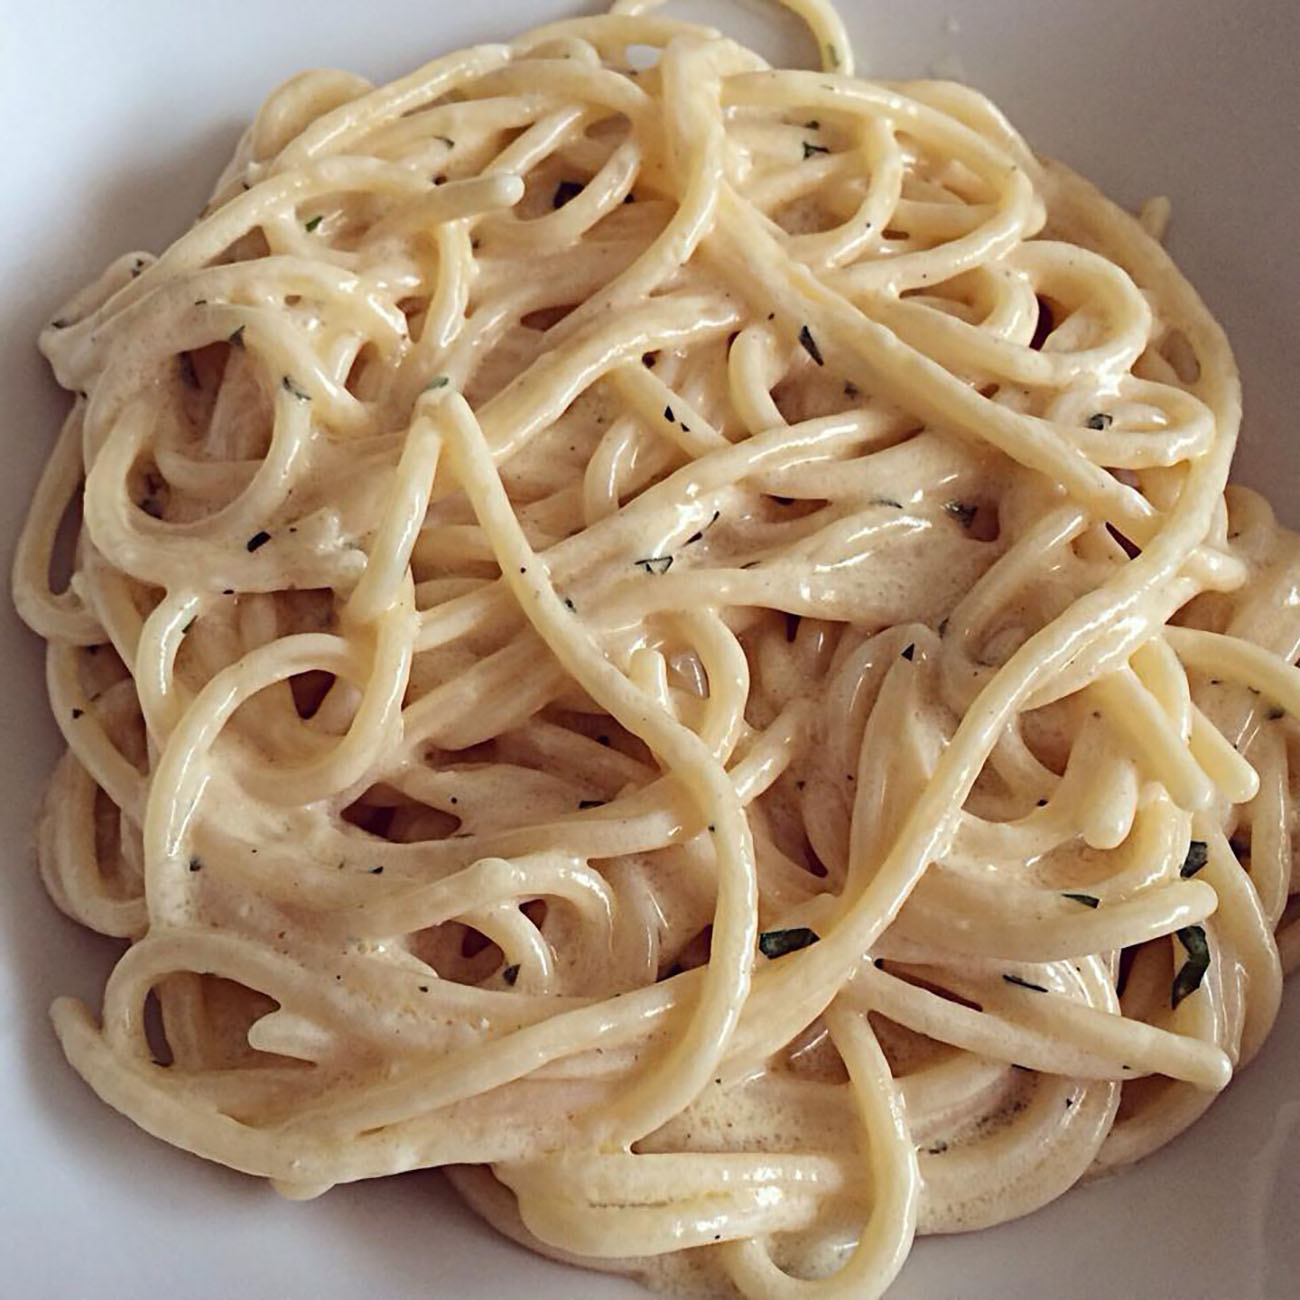 spaghetti-della-liberazione,-meglio-della-cacio-e-pepe-il-primo-amato-dai-partigiani.-pronti-in-5-minuti-con-2-ingredienti